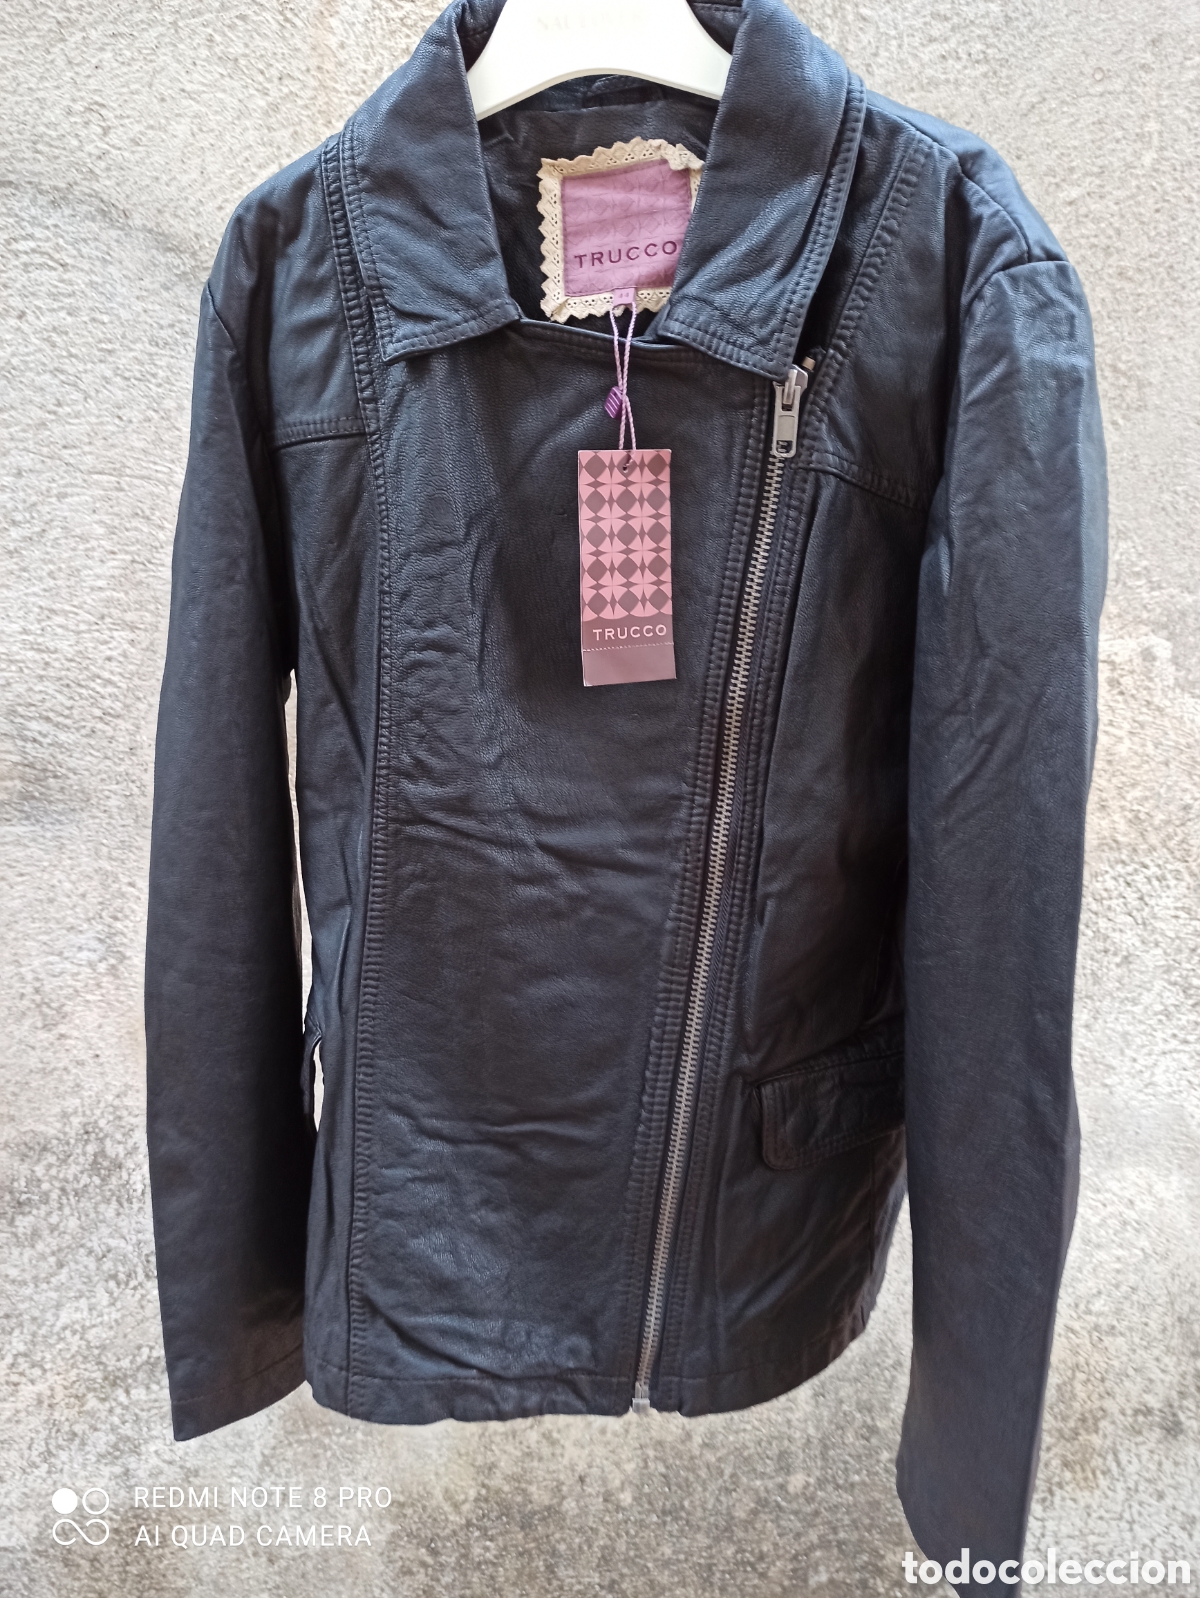 clima espectro Seminario chaqueta de piel trucco, sin estrenar - Buy Women's vintage clothing at  todocoleccion - 382182964